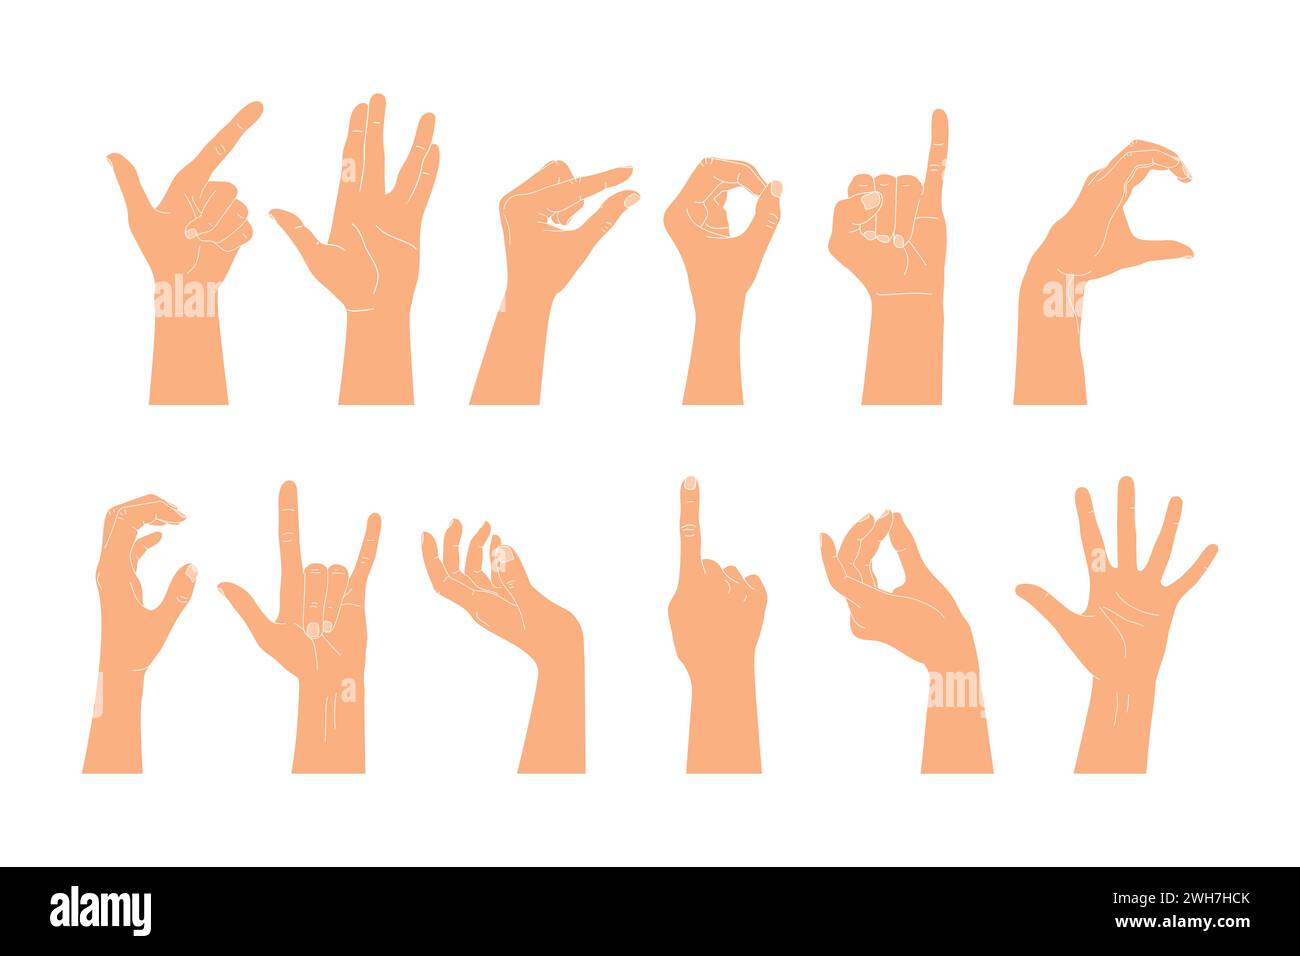 Ein Satz erhobener menschlicher Hände, die verschiedene Gesten zeigen. Vektorillustration menschlicher Hände Stock Vektor